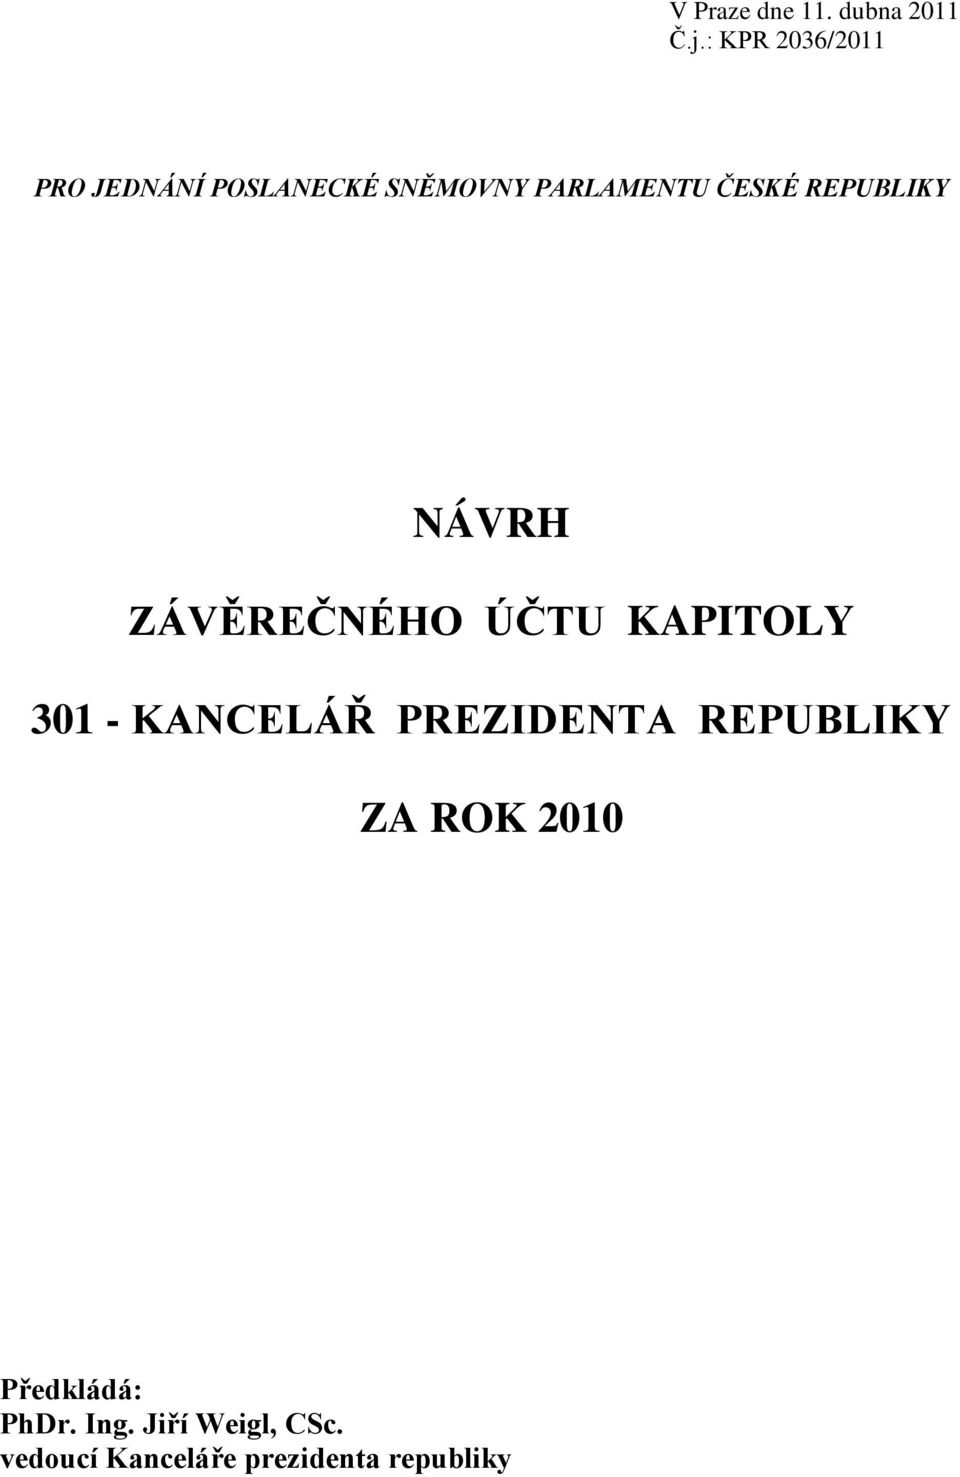 REPUBLIKY NÁVRH ZÁVĚREČNÉHO ÚČTU KAPITOLY 301 - KANCELÁŘ